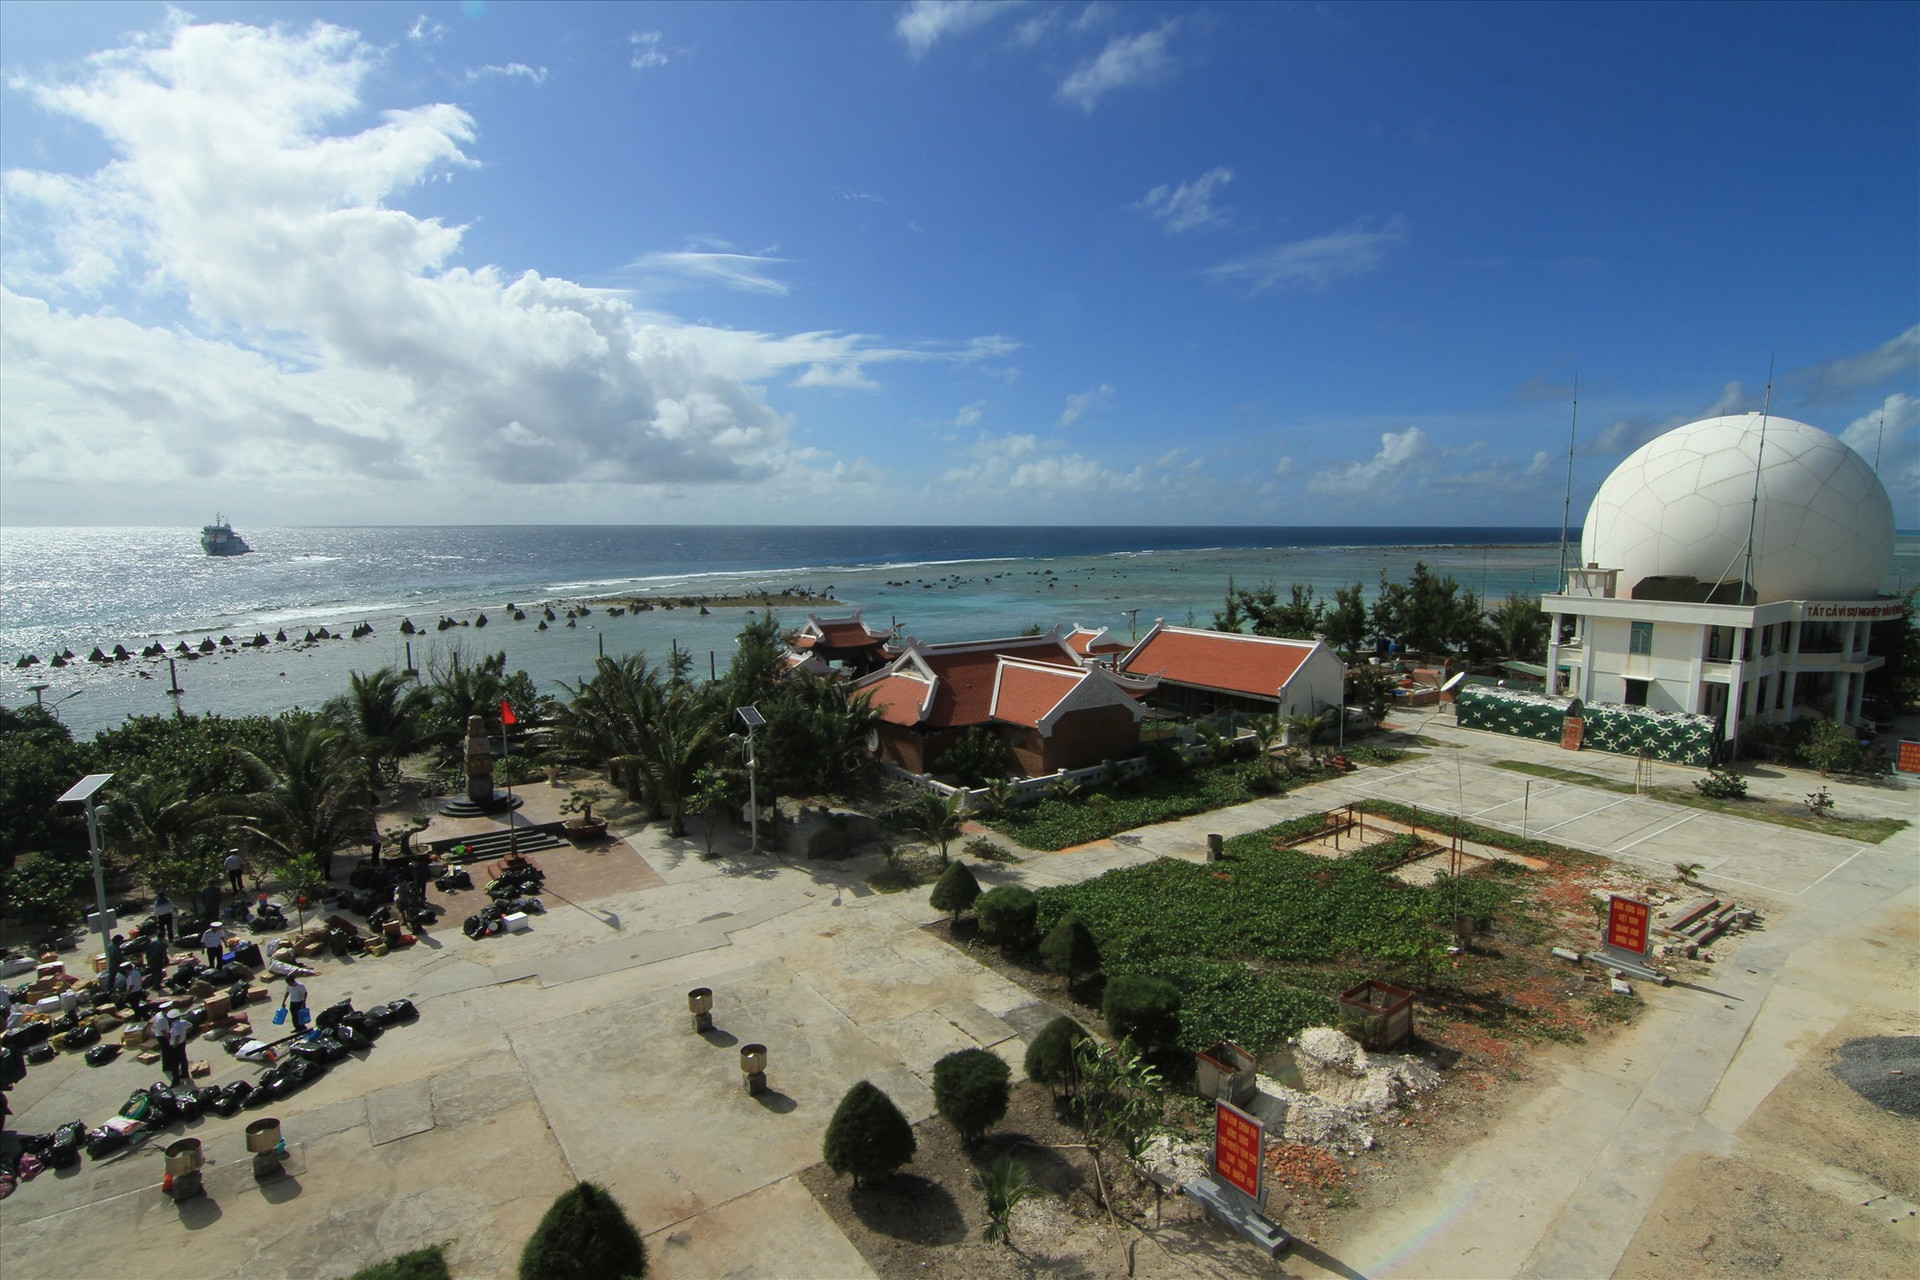 Nổi bật góc đảo Phan Vinh là trạm ra đa với hình quả cầu trắng khổng lồ, được mệnh danh là mắt thần trên biển.